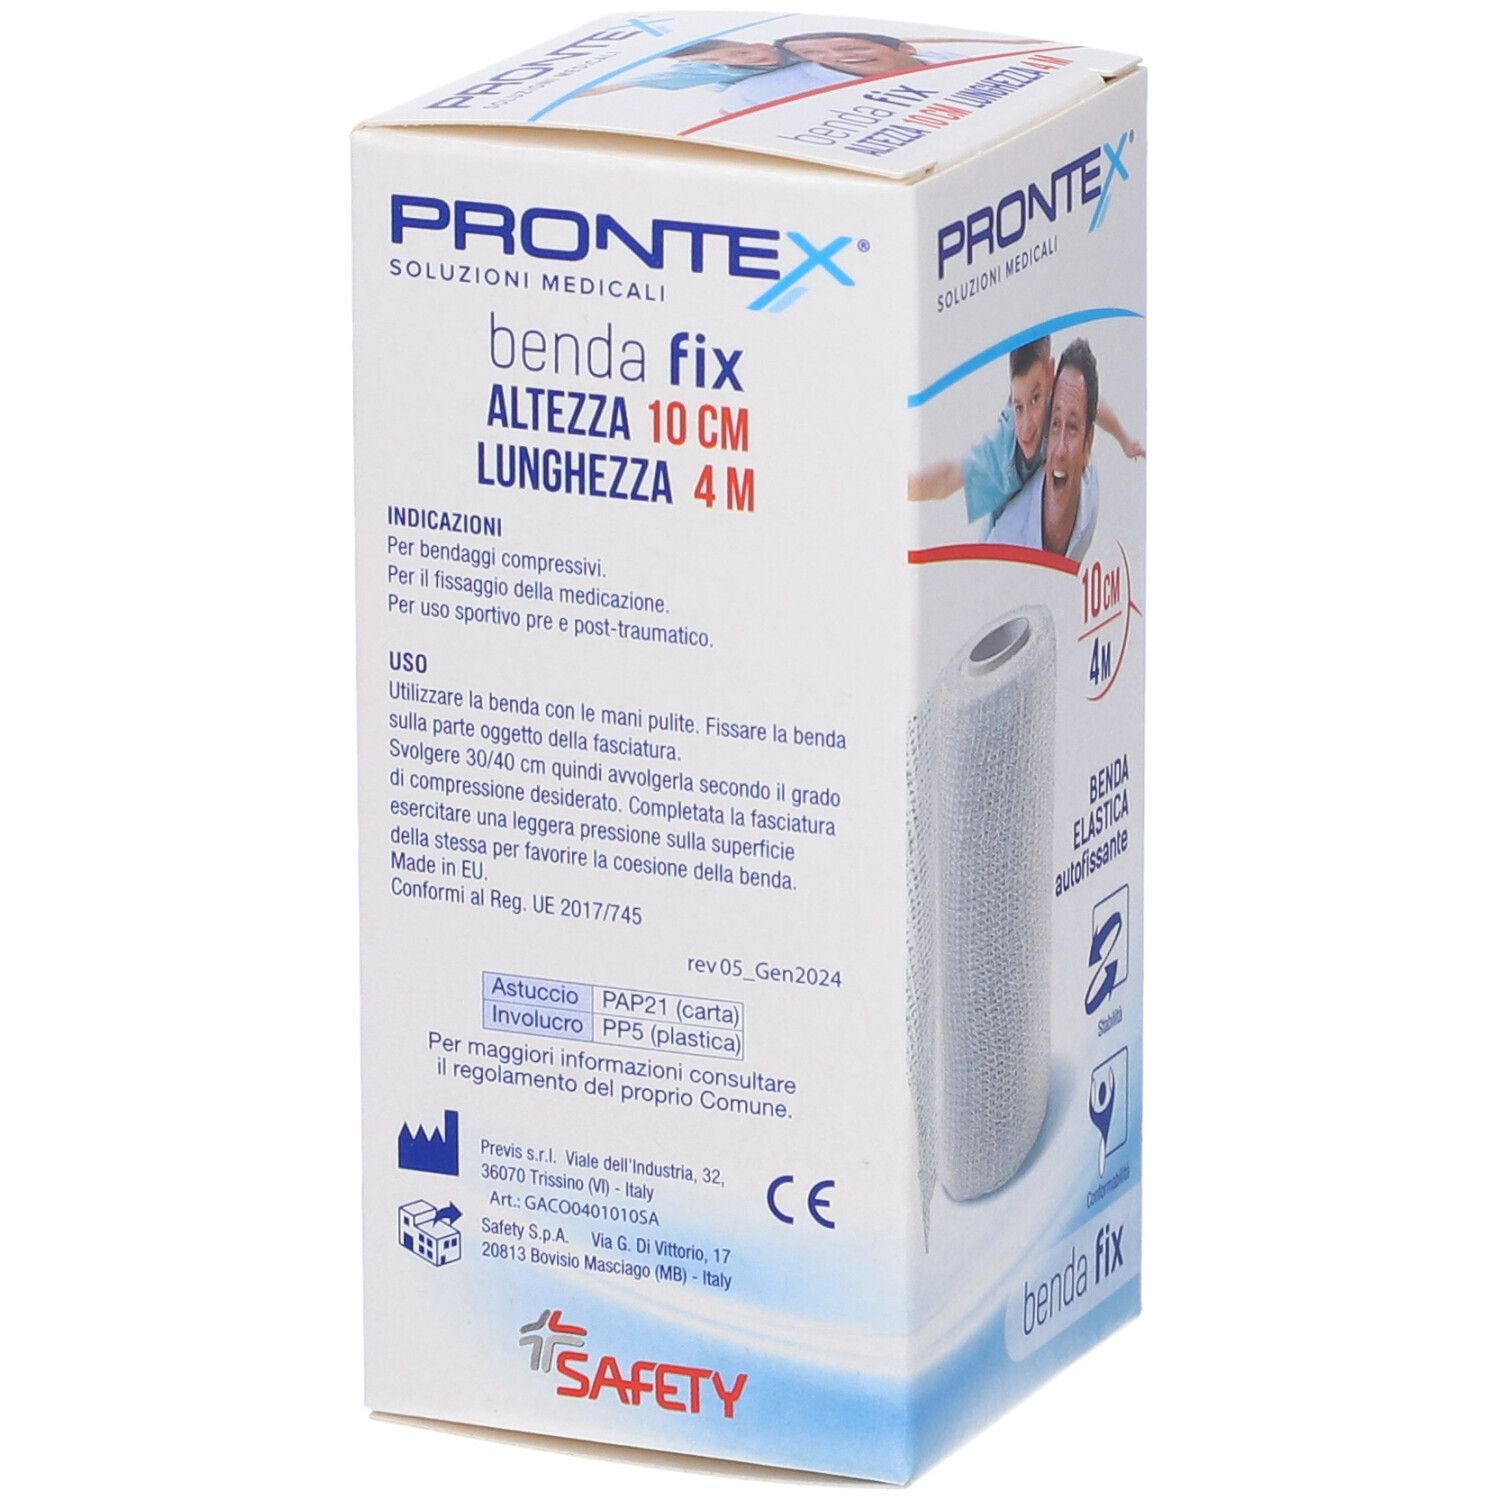 PRONTEX® Benda Fix Elastica Autofissante 4 m x 10 cm